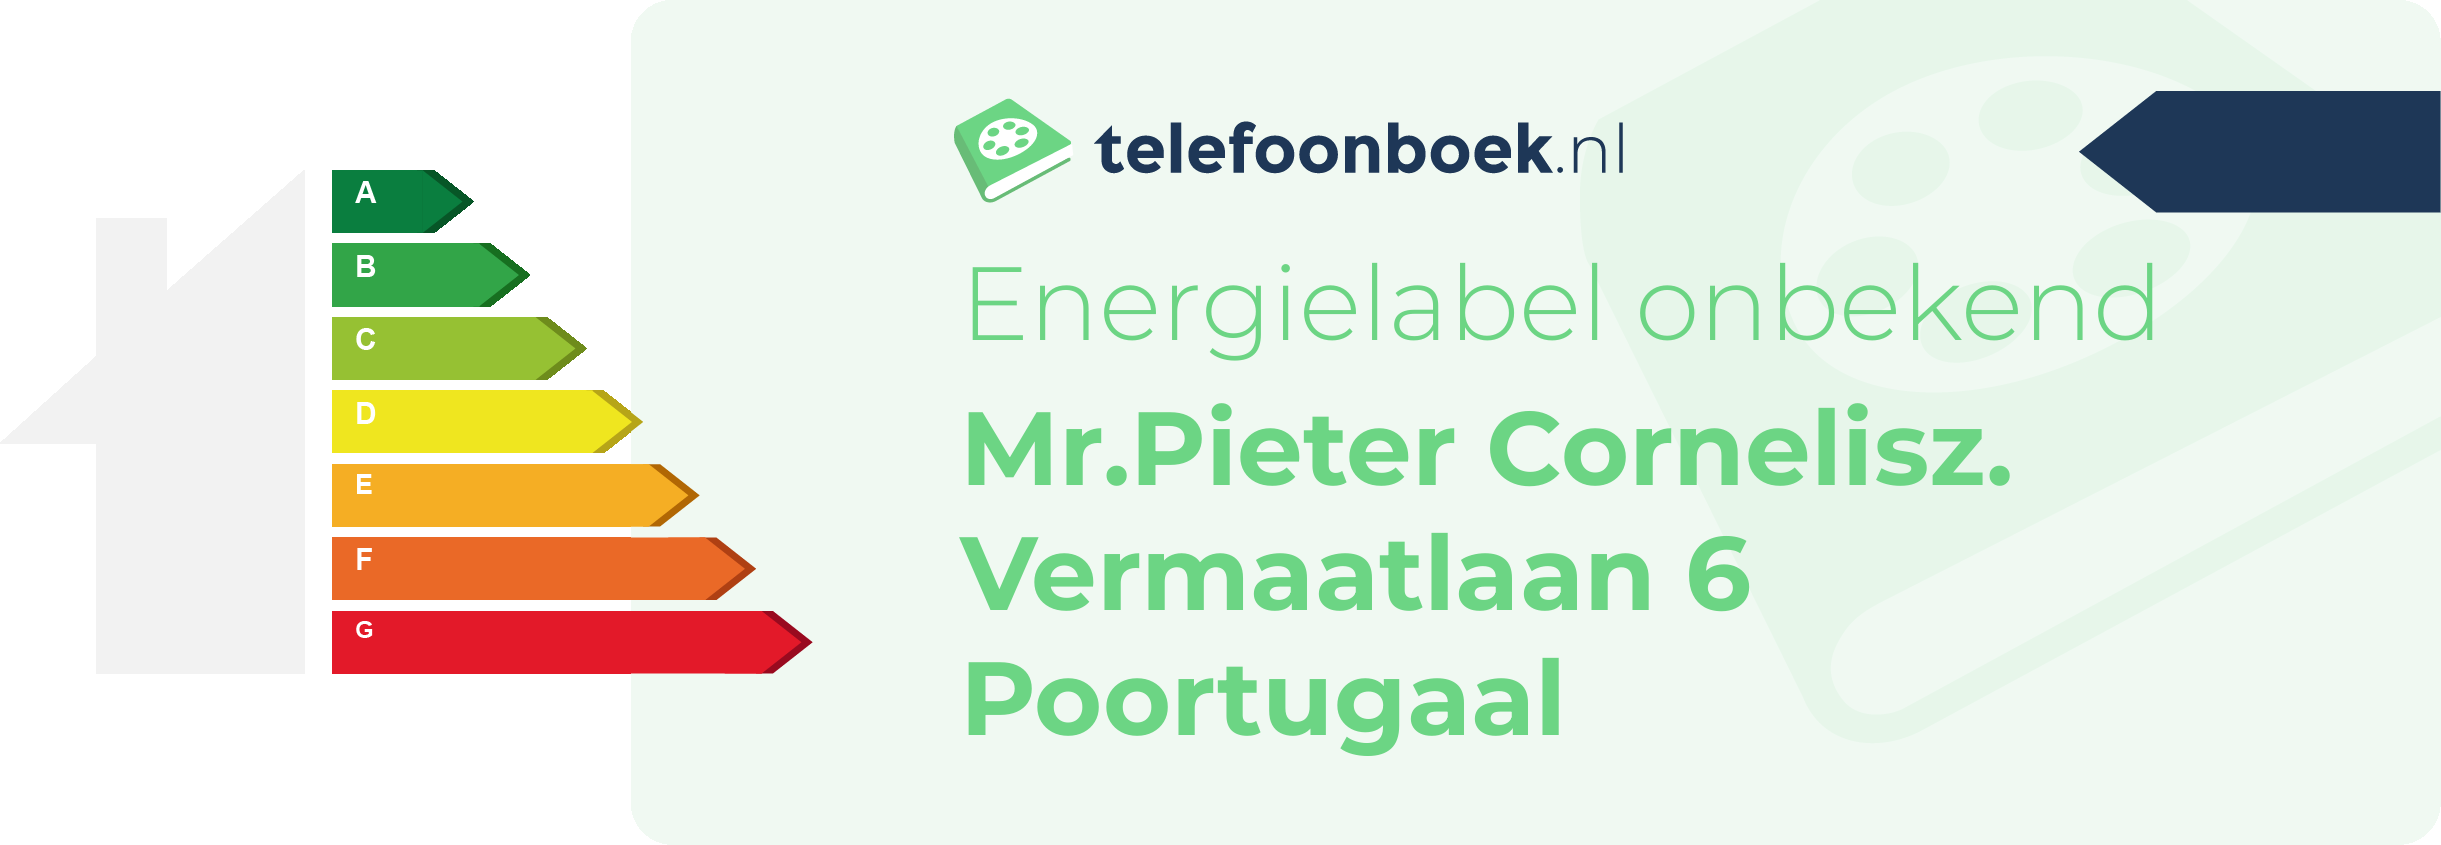 Energielabel Mr.Pieter Cornelisz. Vermaatlaan 6 Poortugaal